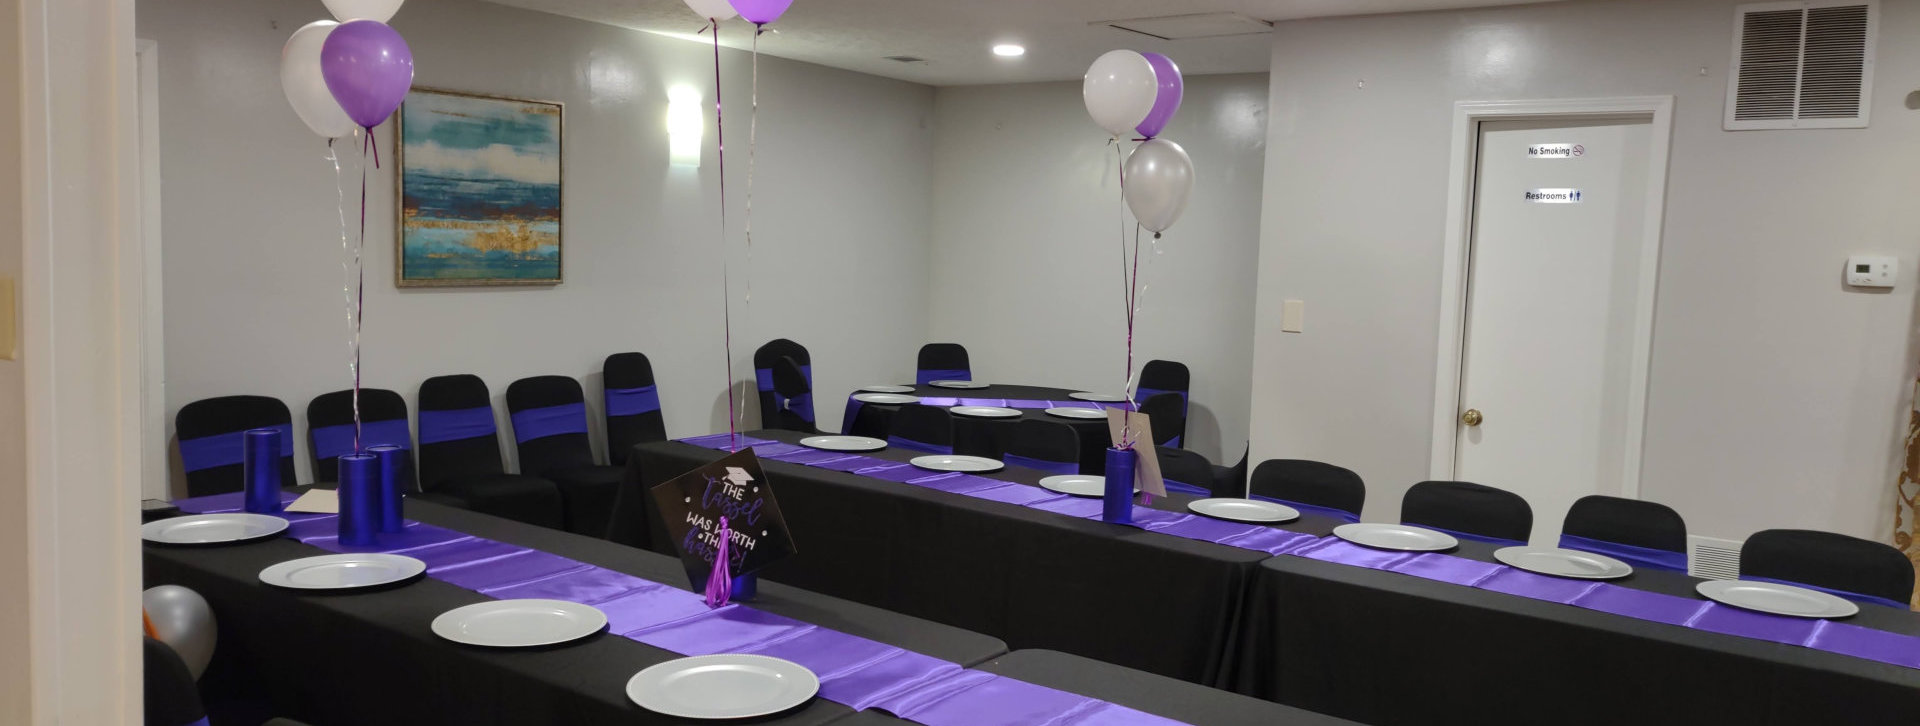 purple table setup